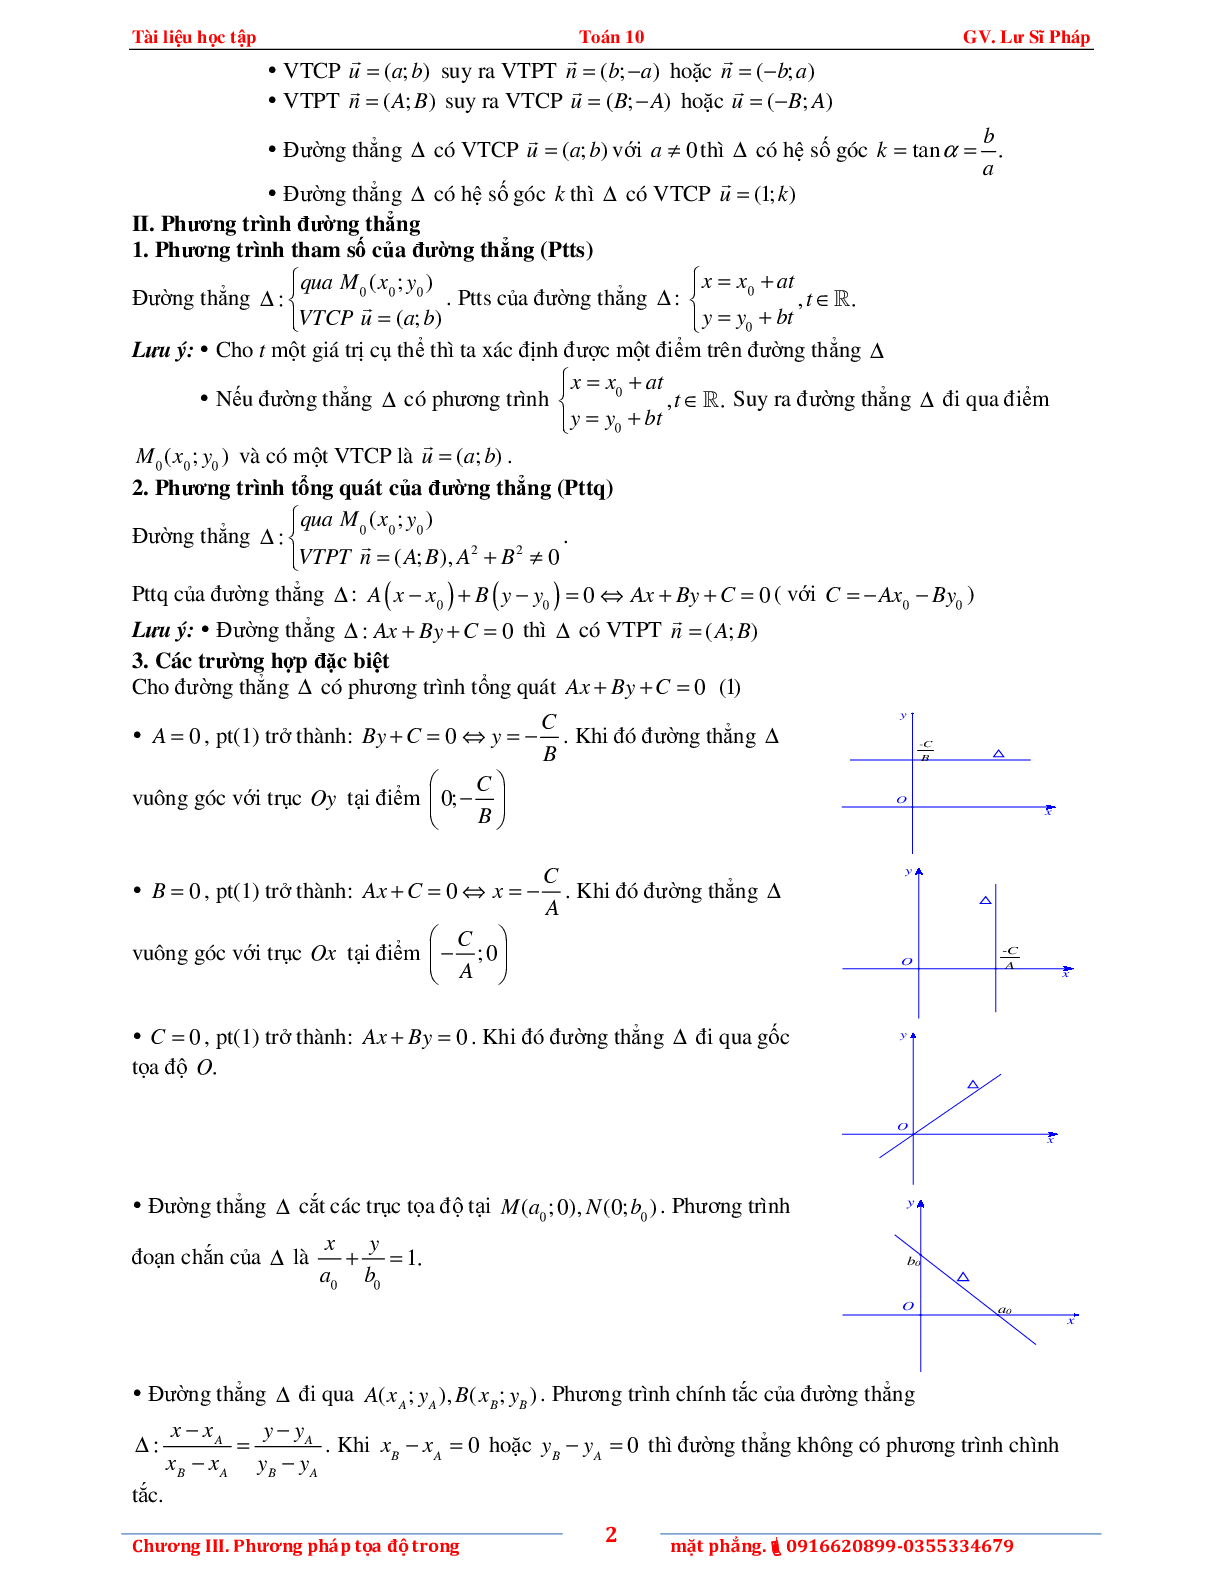 Tài liệu phương pháp tọa độ trong mặt phẳng (trang 6)